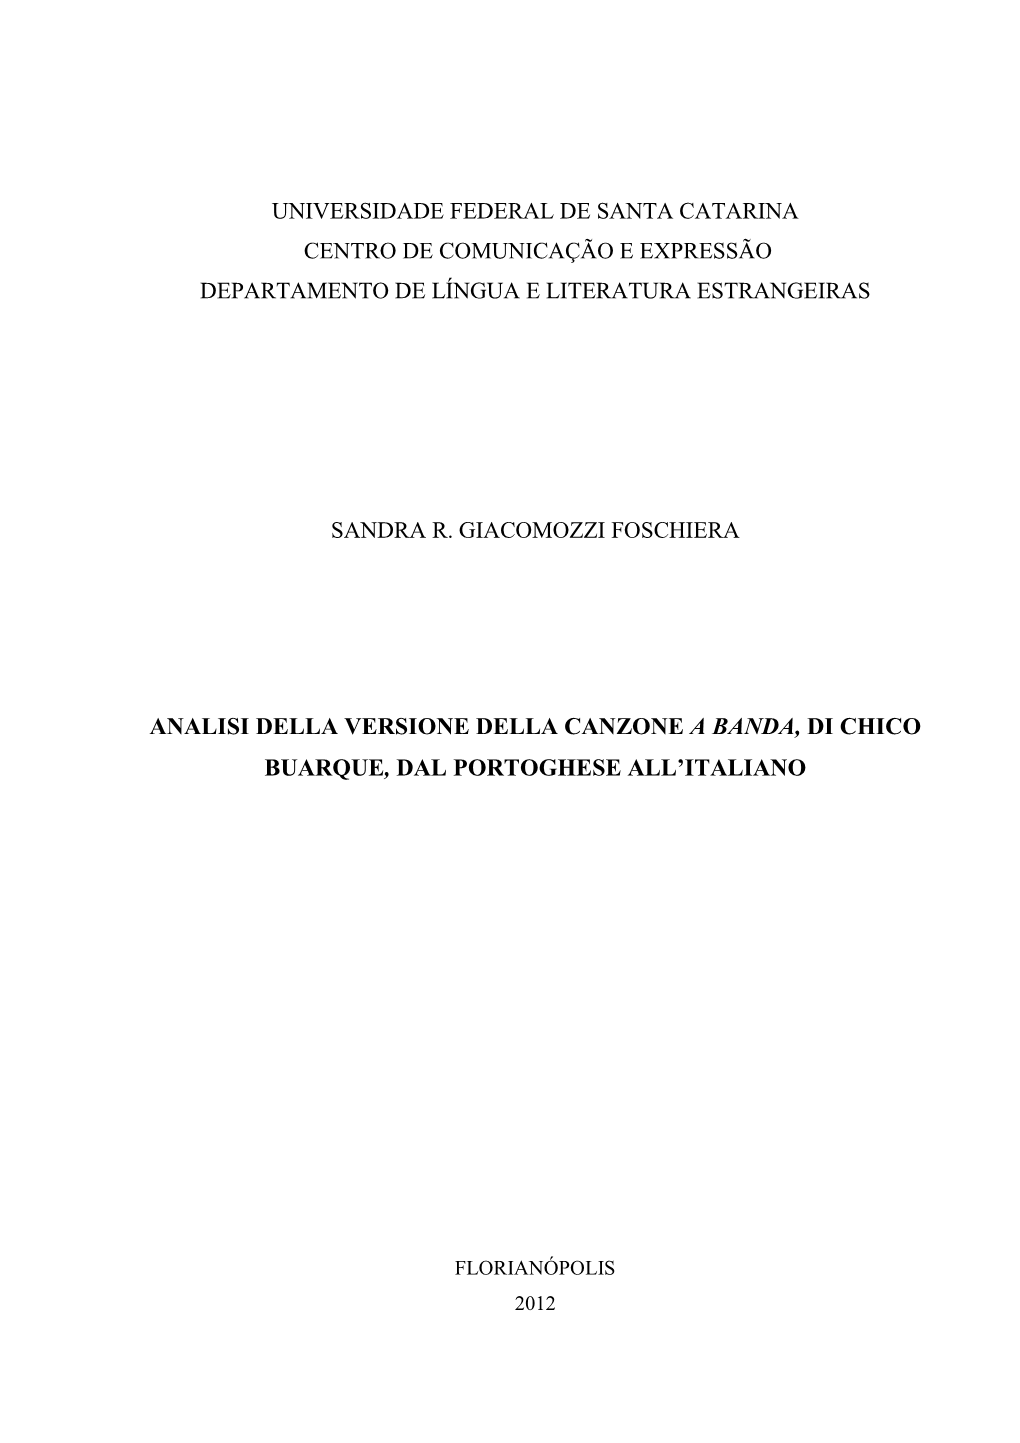 Analisi Della Versione Della Canzone a Banda, Di Chico Buarque, Dal Portoghese All'italiano